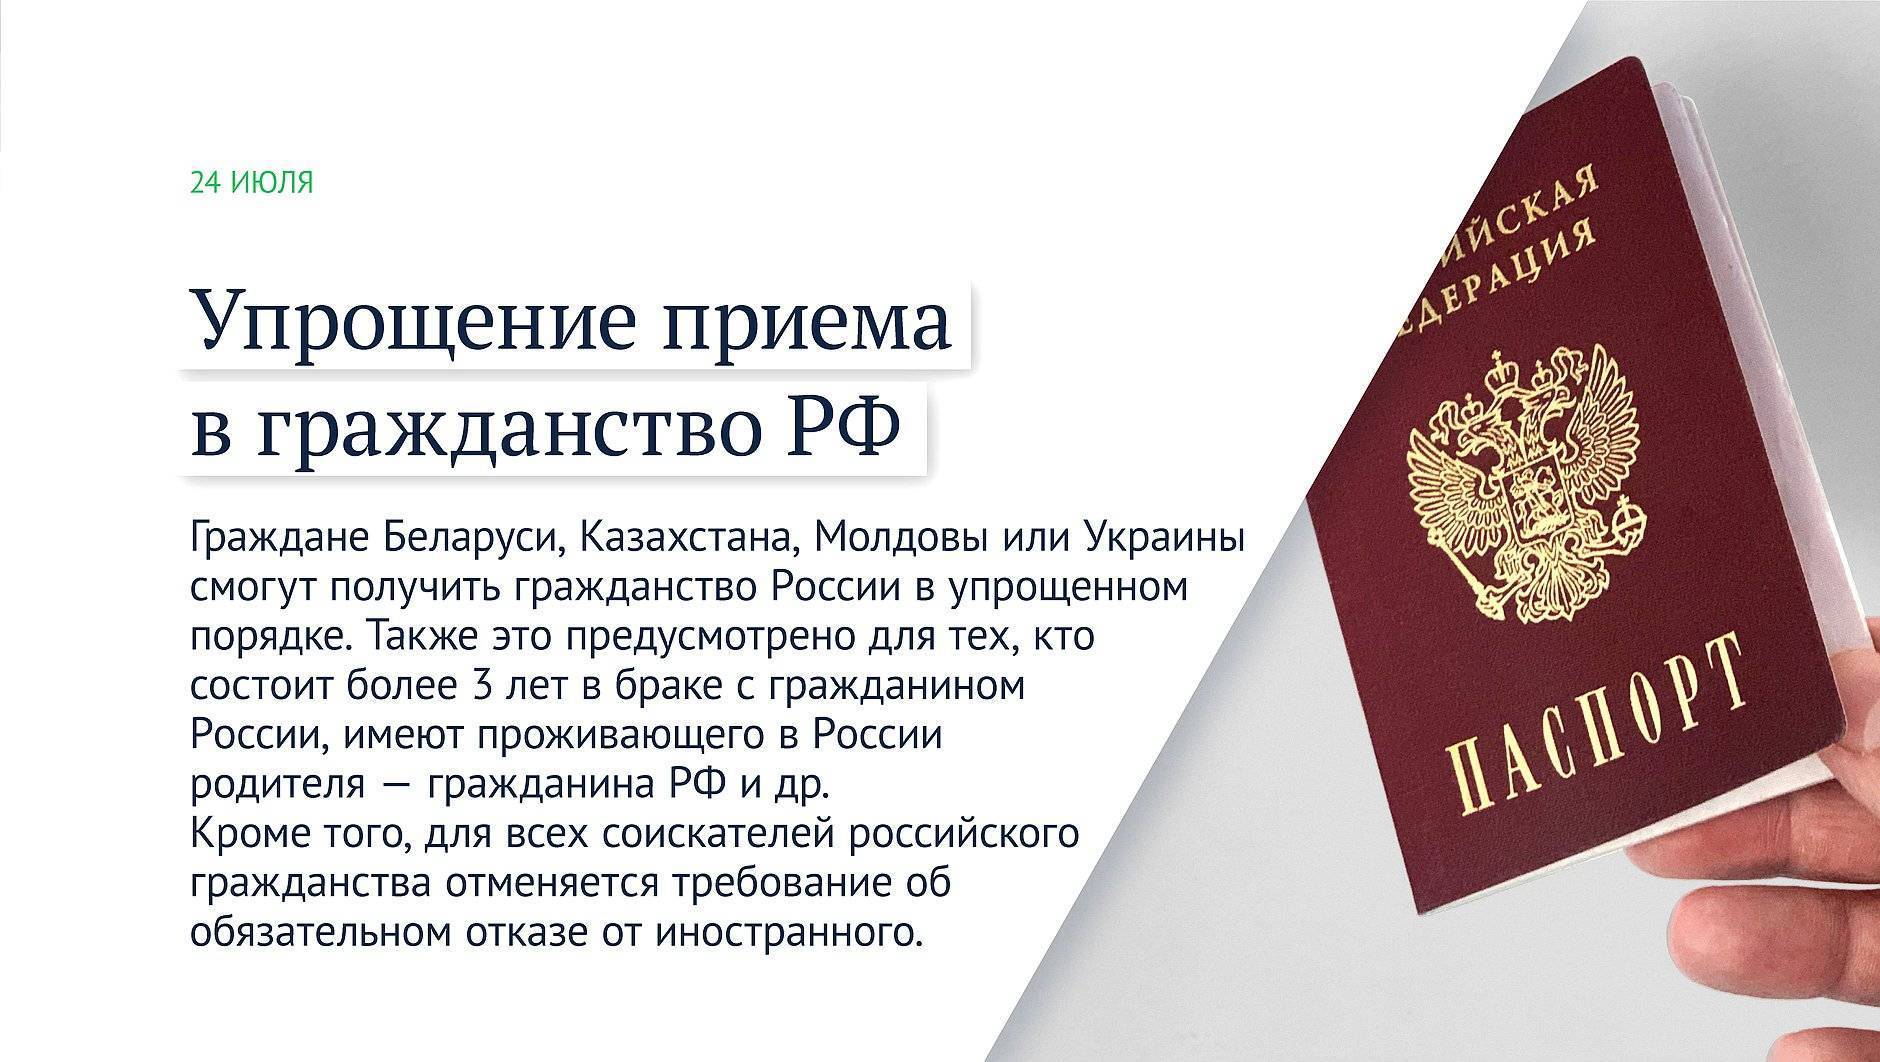 Гражданство молдовы – авантюра или интересный путь для россиян получить безвиз в европу?